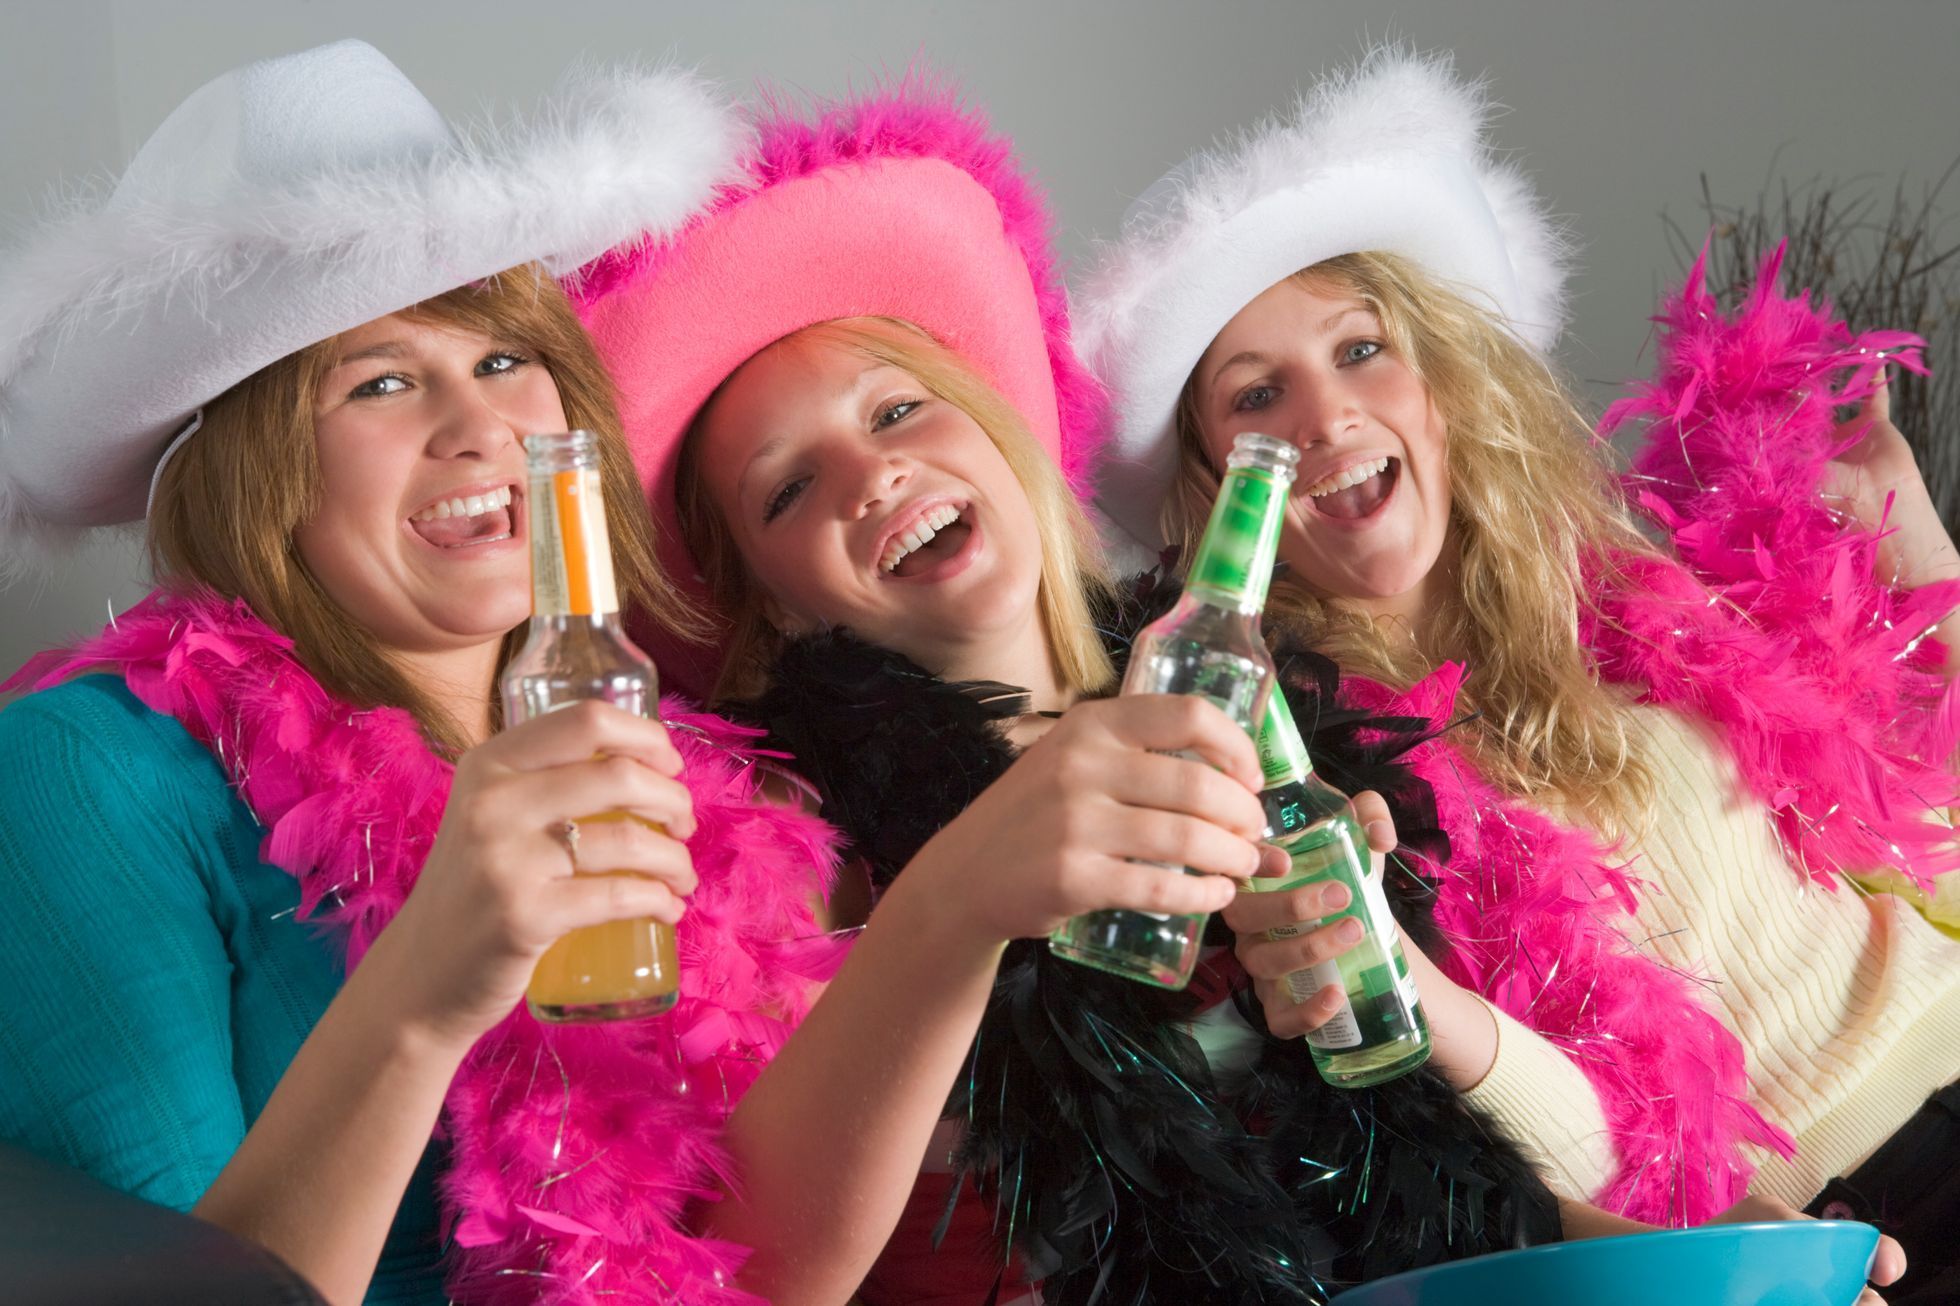 Děti - mládež - dívky - alkohol - oslava - party